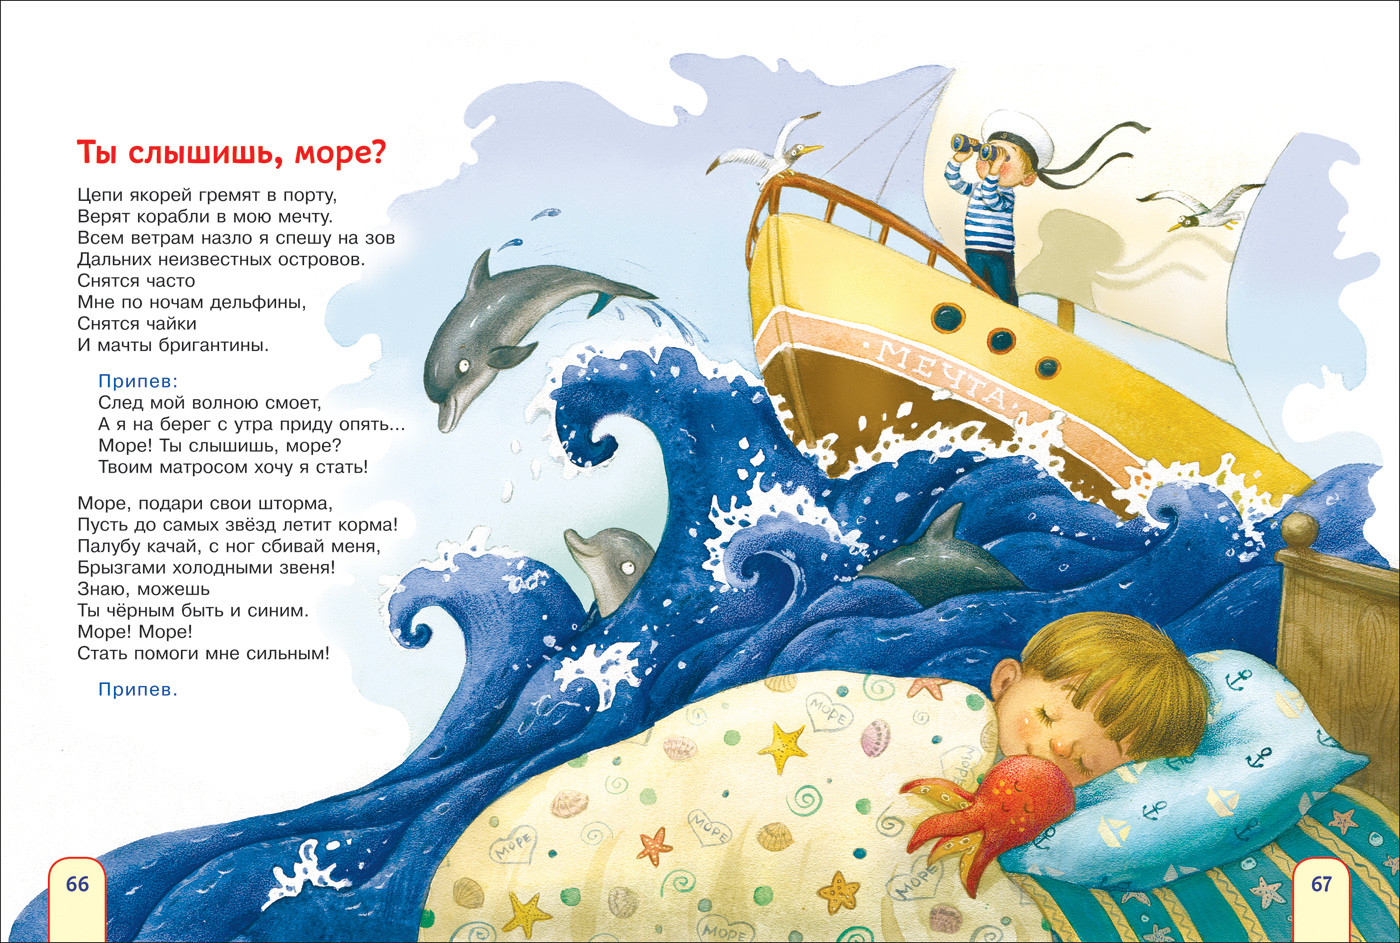 Твоим матросом хочу я стать. Детская сказка про море книги. Детский стишок про море. Стихотворение про море для детей. Сказки про море для детей.